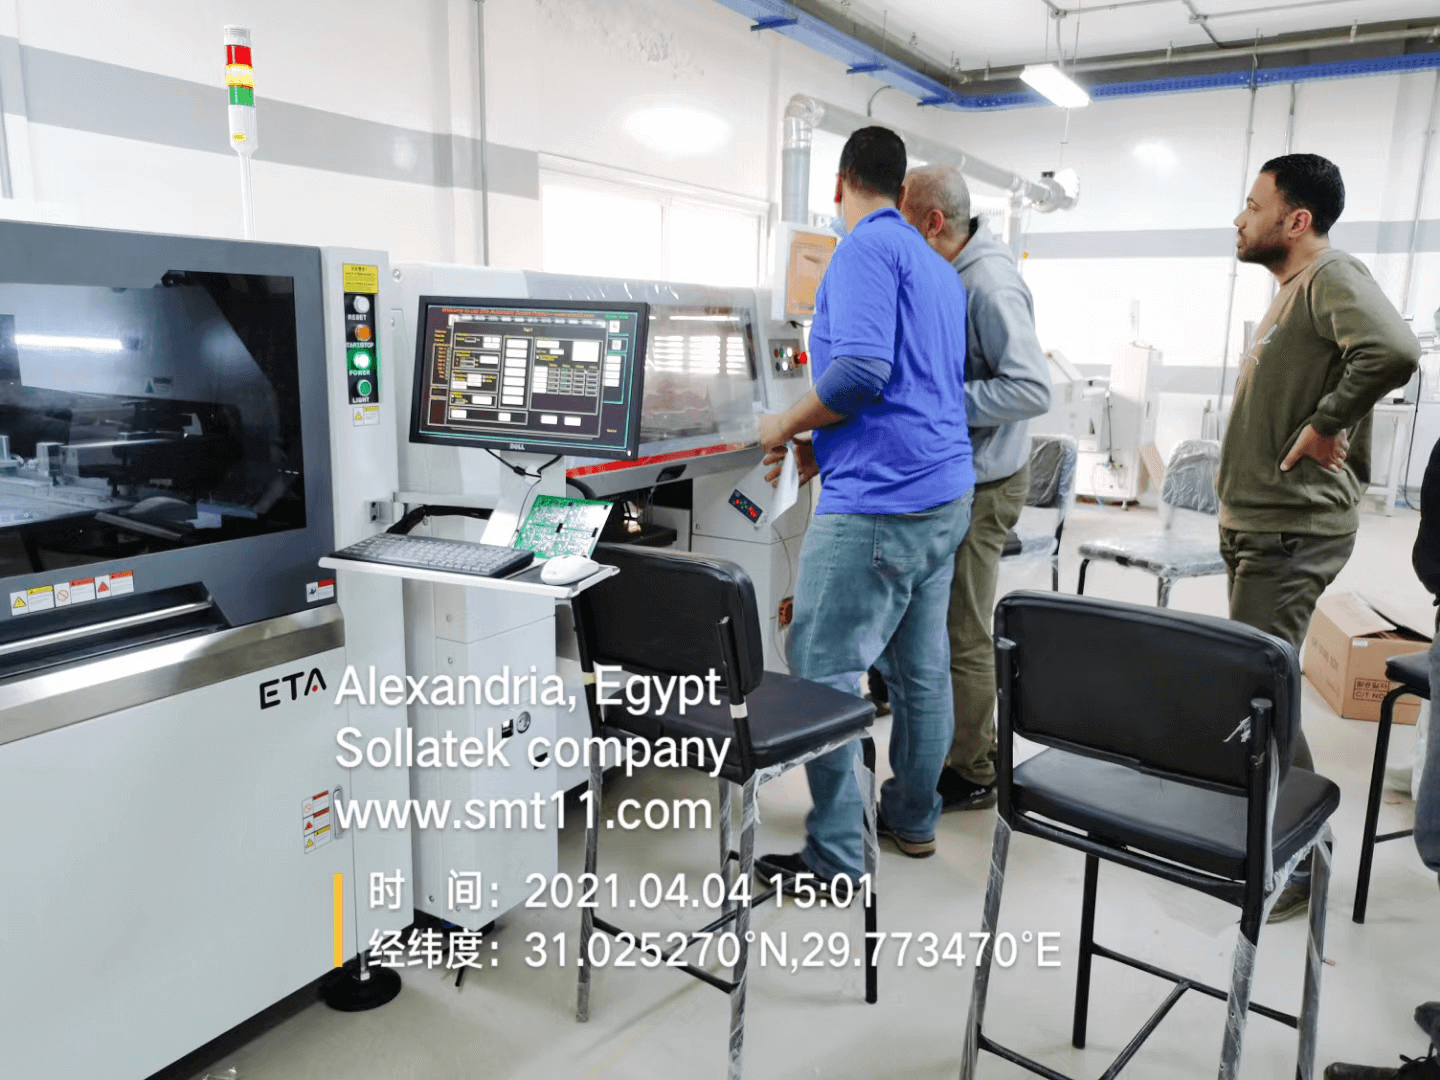 4 Dịch vụ toàn cầu ETA ở Ai Cập